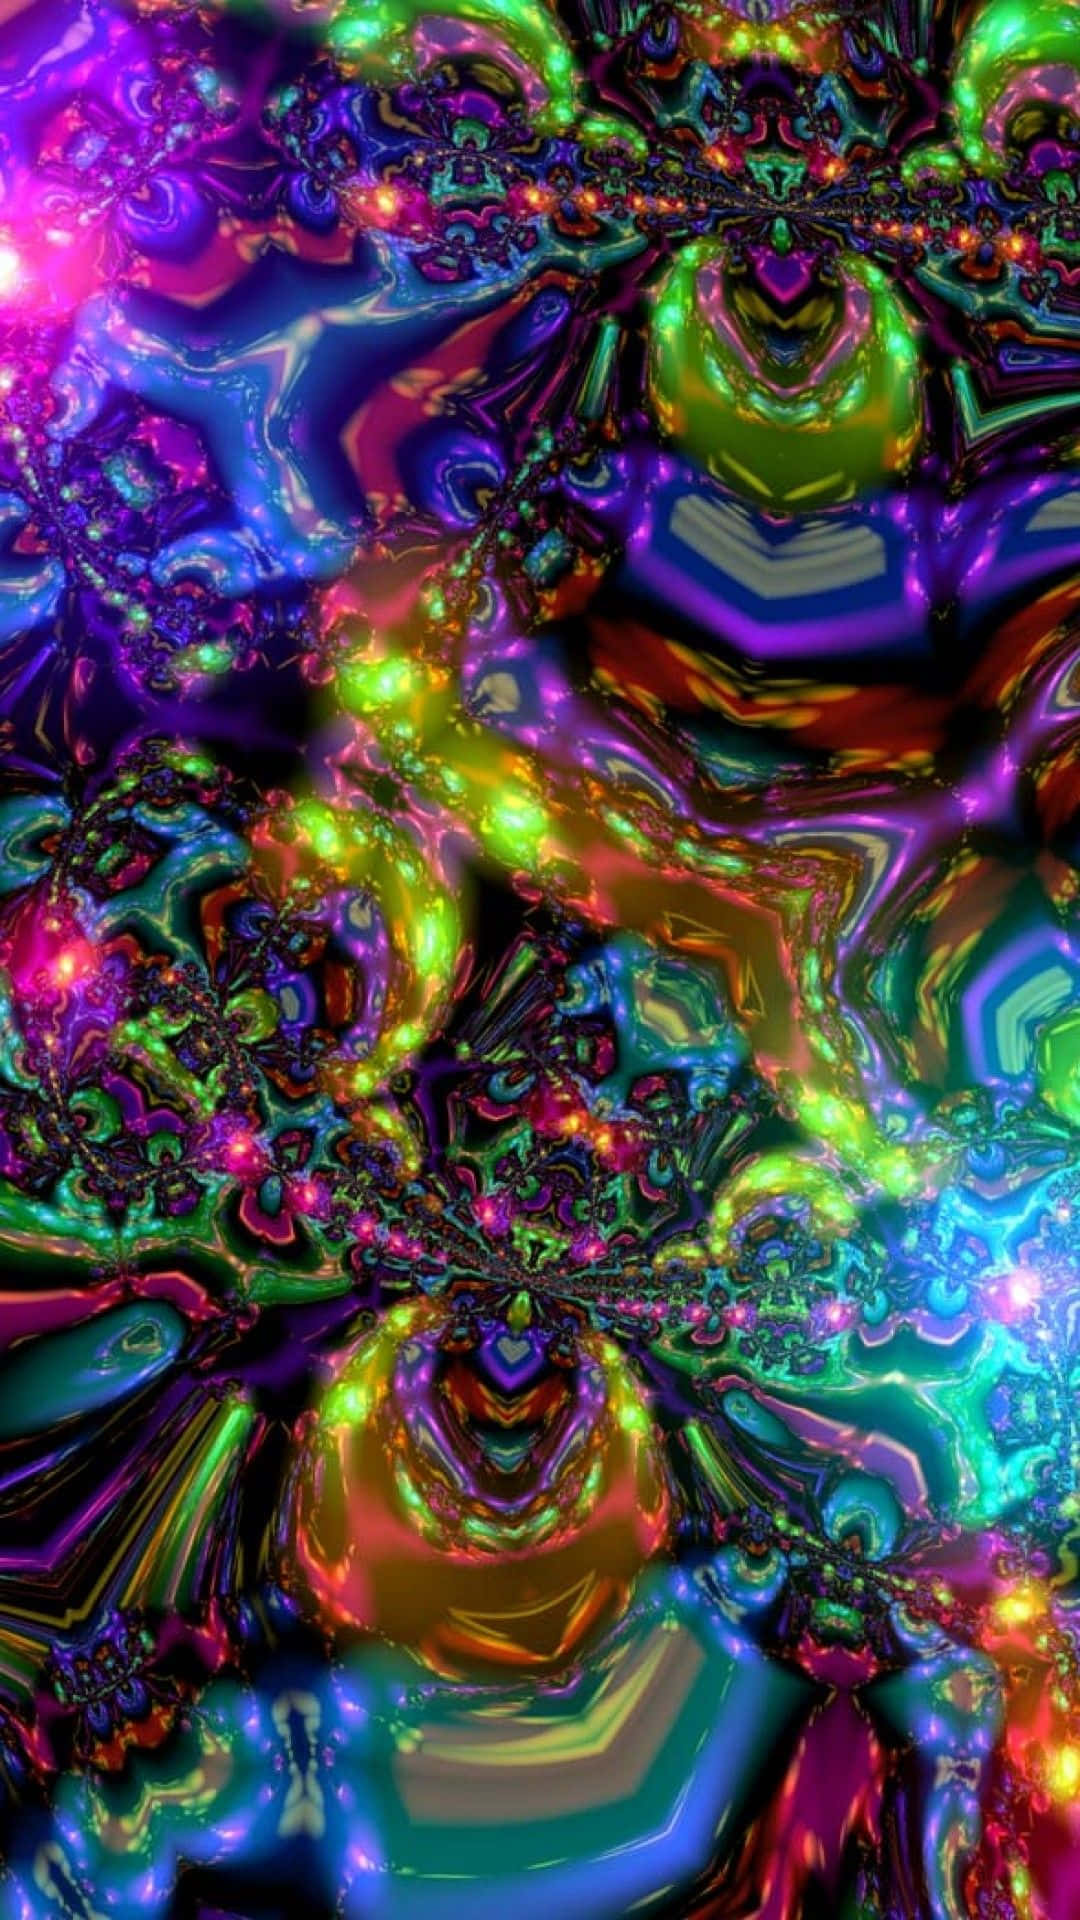 Unaimagen Psicodélica Y Colorida Con Un Arco Iris De Colores. Fondo de pantalla